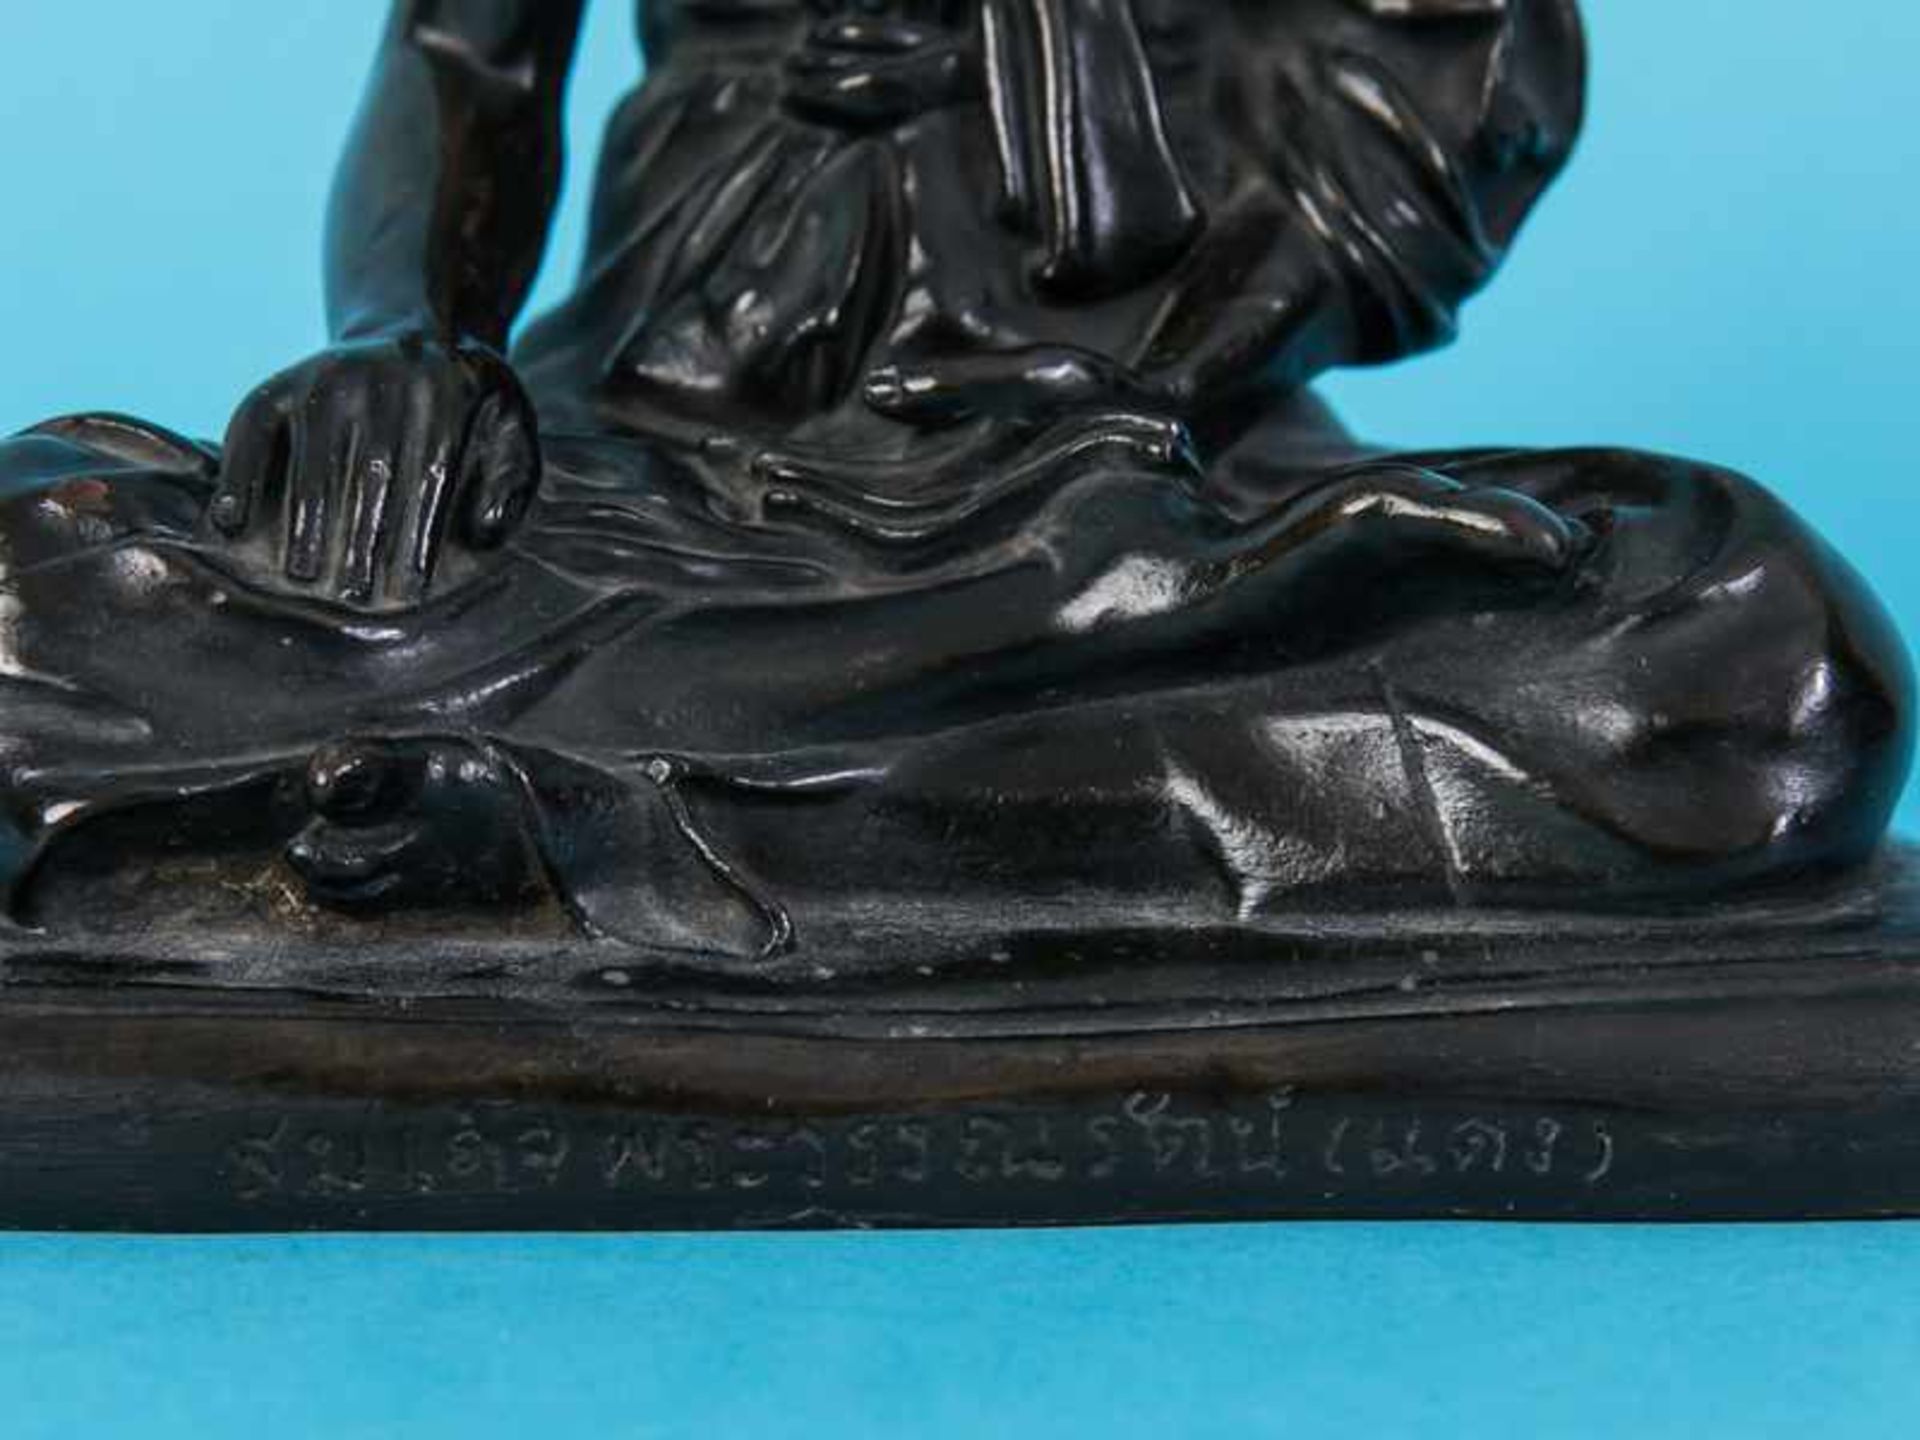 Figurenplastik "Buddhistischer Mönch", Thailand, 19./20. Jh. Bronze, dunkelbraunfarbig patiniert; - Bild 3 aus 9